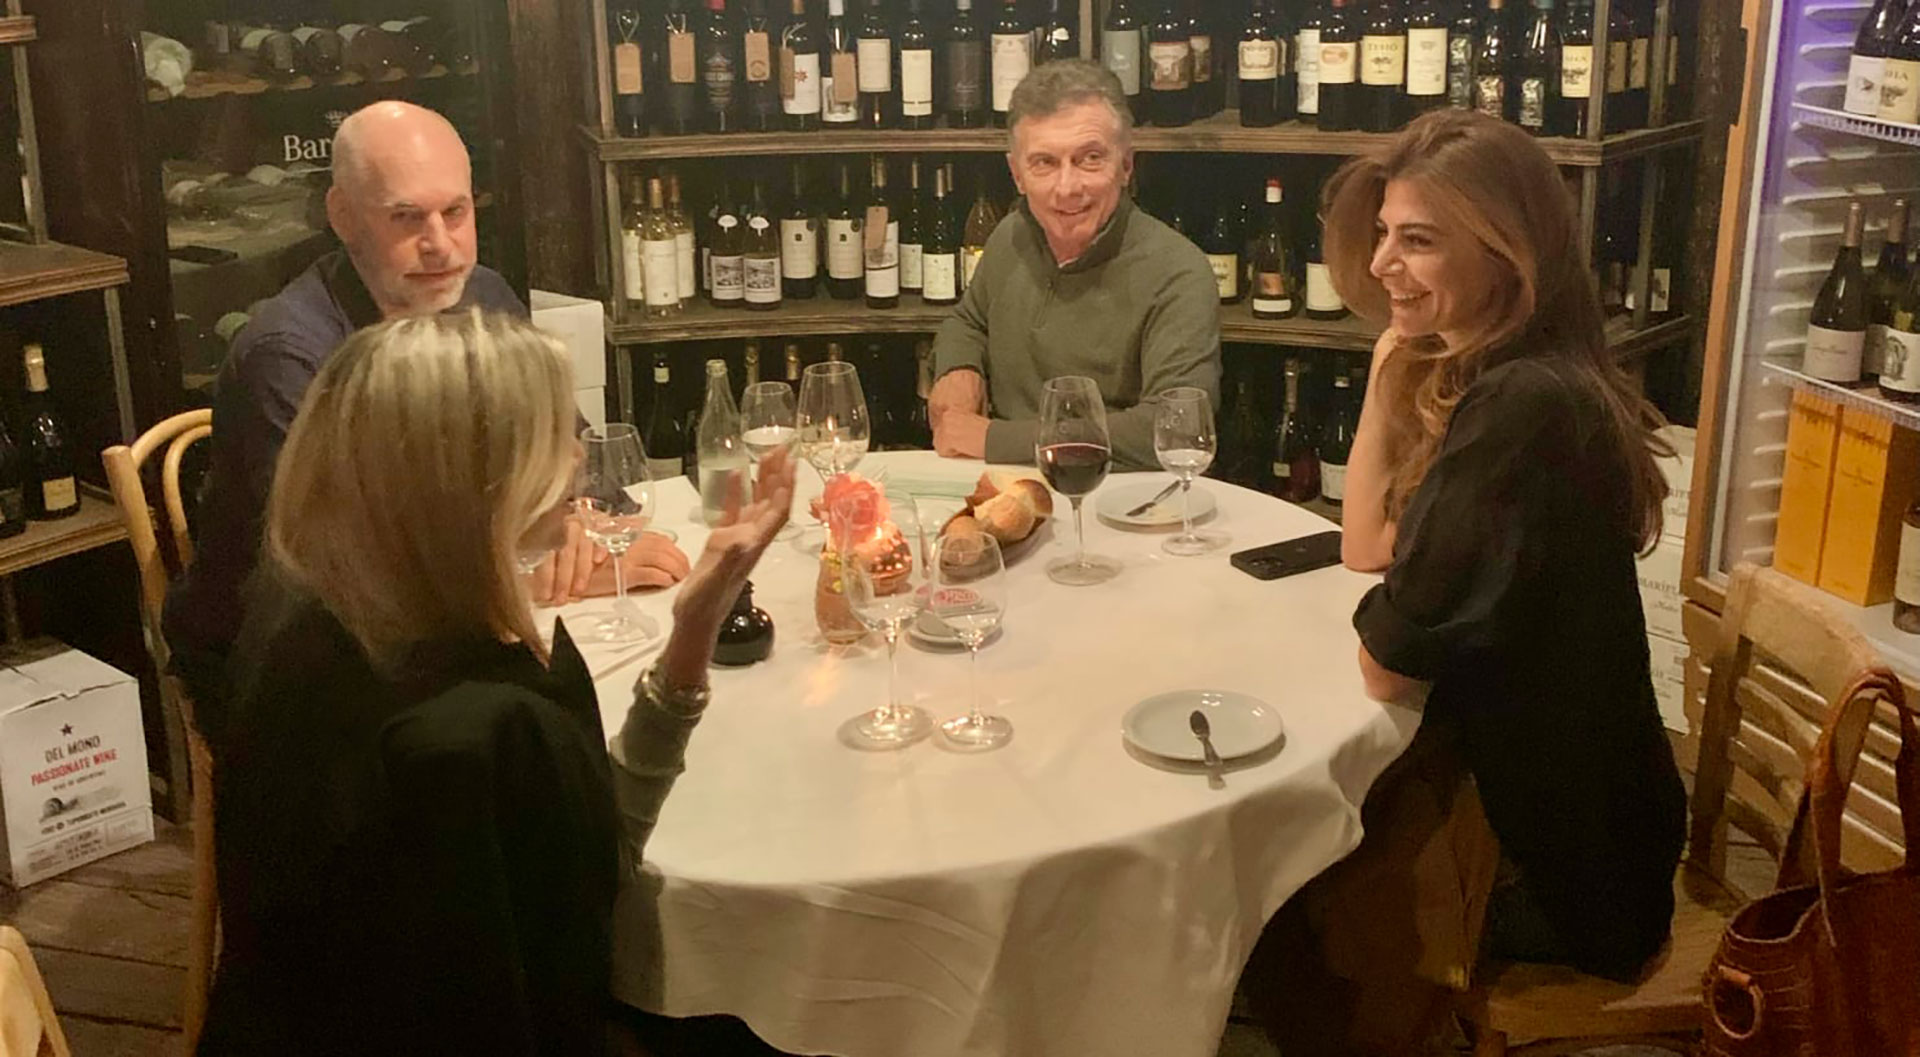 La cena que compartieron Mauricio Macri y Horacio Rodríguez Larreta con sus parejas, Juliana Awada y Milagros Maylin, respectivamente
